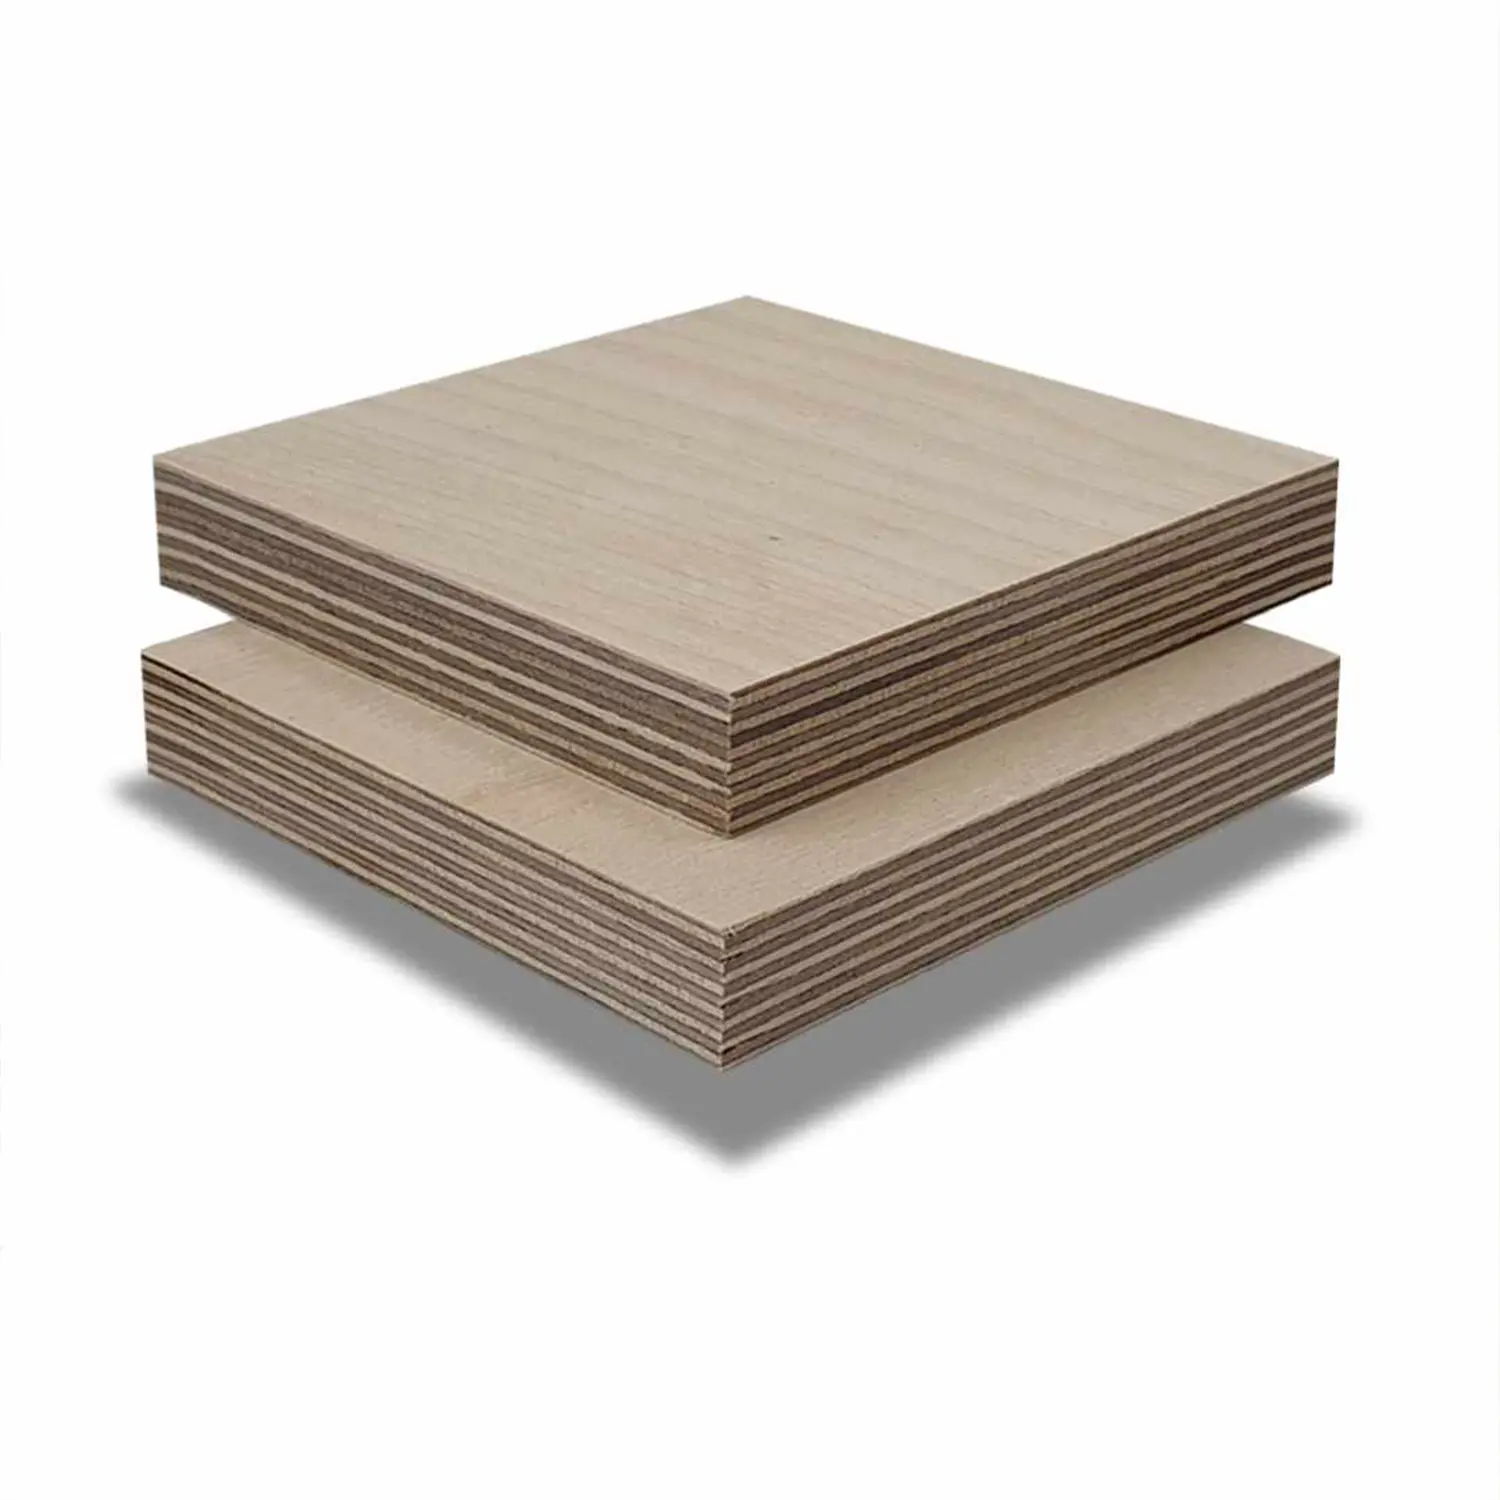 Grosir murah plywood 3/4 4x8 Baltik birch lembar kayu lapis dengan kualitas tinggi